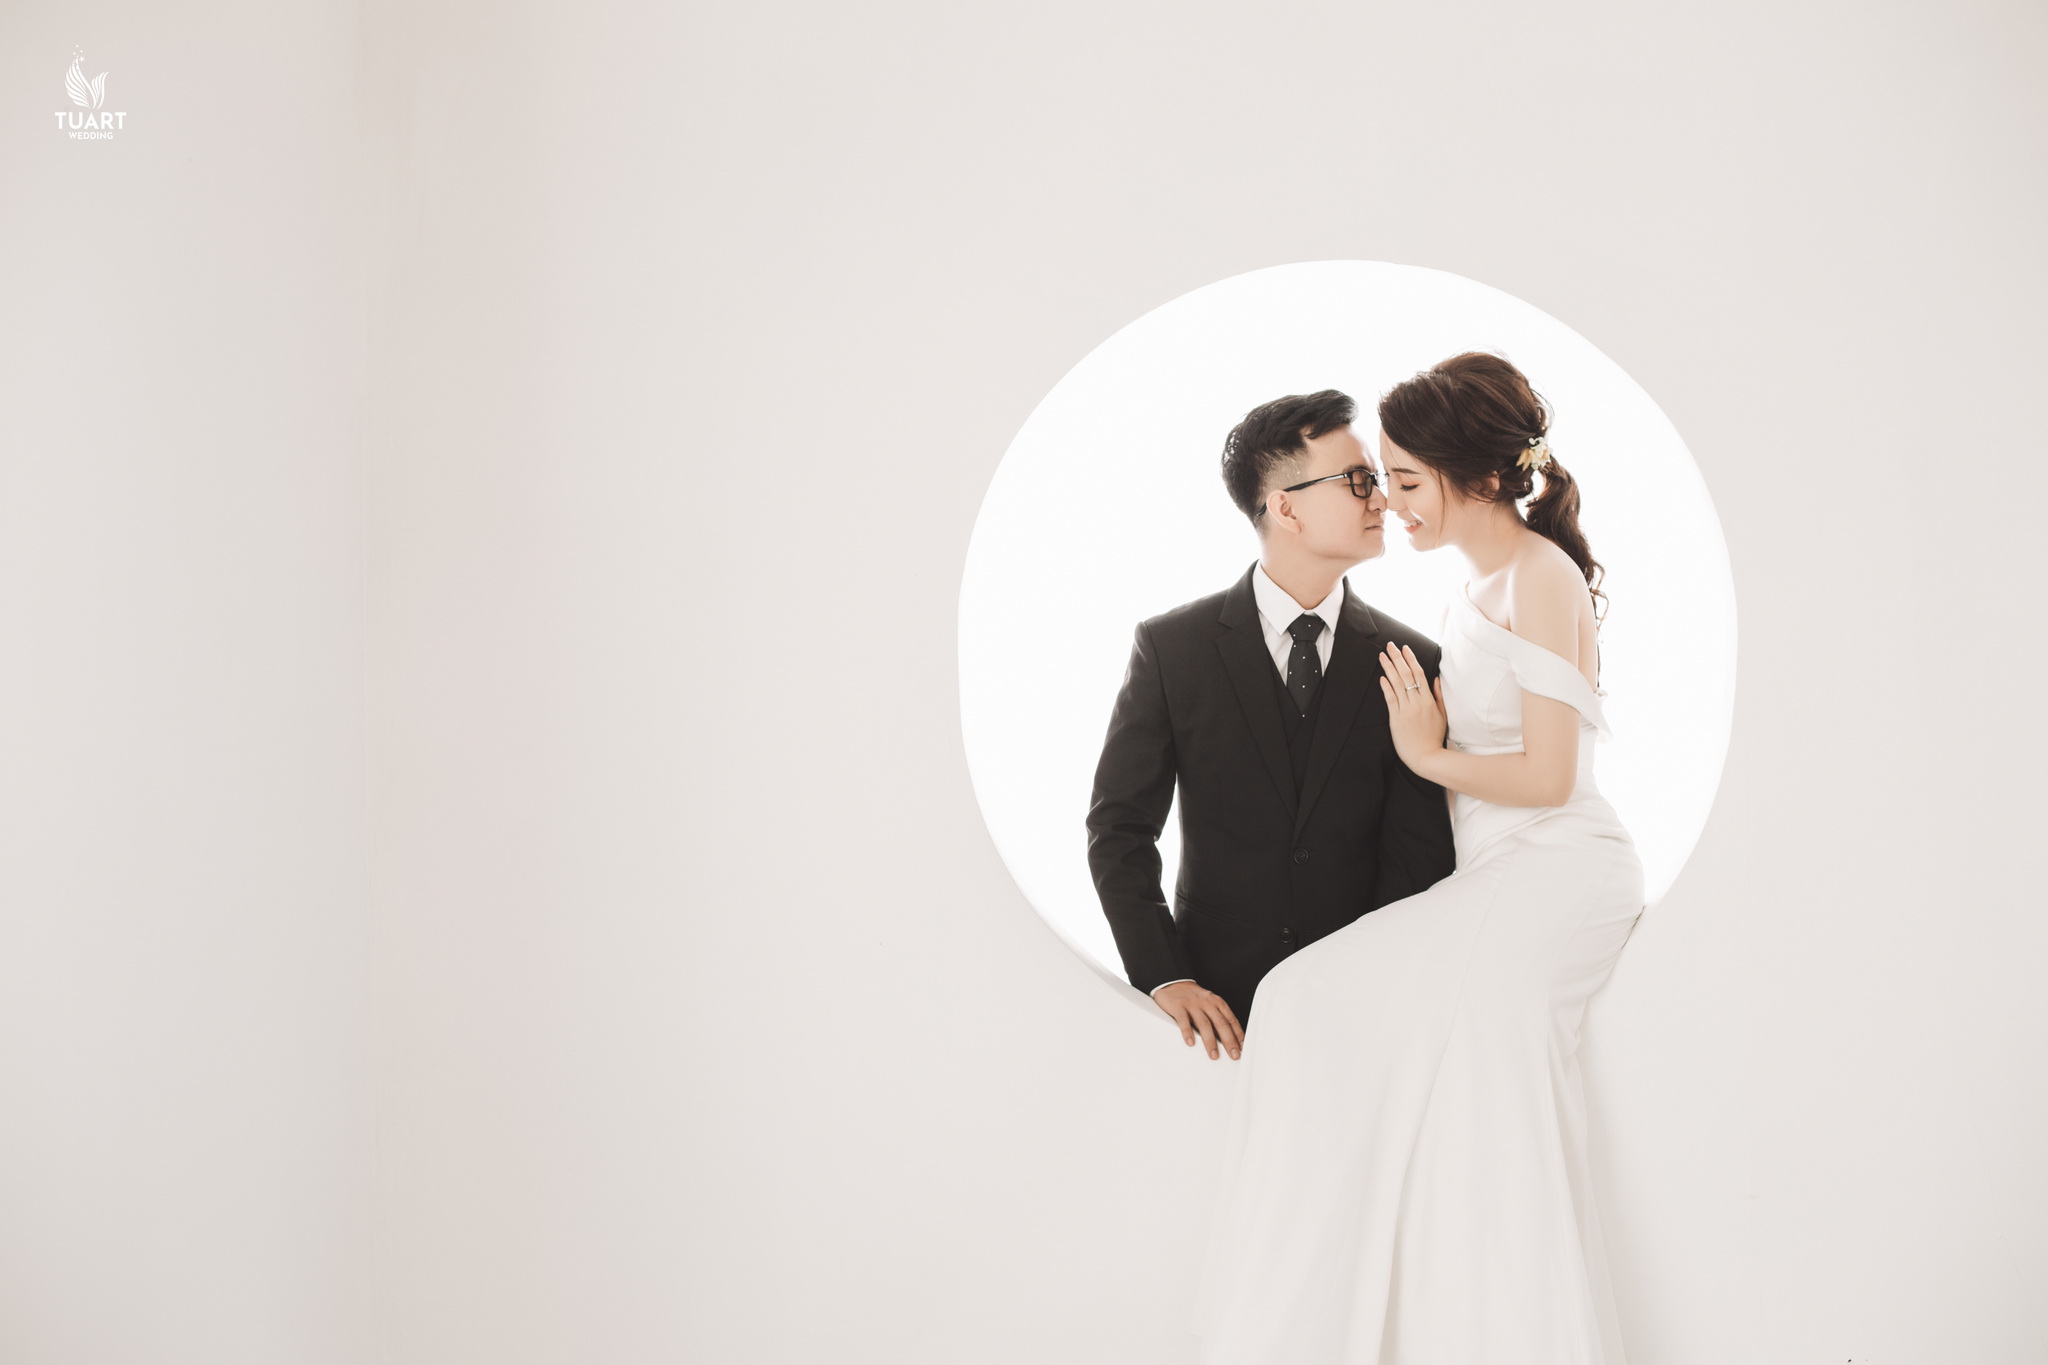 Ảnh cưới Hàn Quốc là một trong những loại hình ảnh cưới được nhiều người lựa chọn. Nếu bạn yêu thích vẻ đẹp trẻ trung và tươi sáng của ảnh cưới Hàn Quốc, hãy vào xem ảnh liên quan và tìm kiếm những thông tin và ý tưởng về ảnh cưới Hàn Quốc.